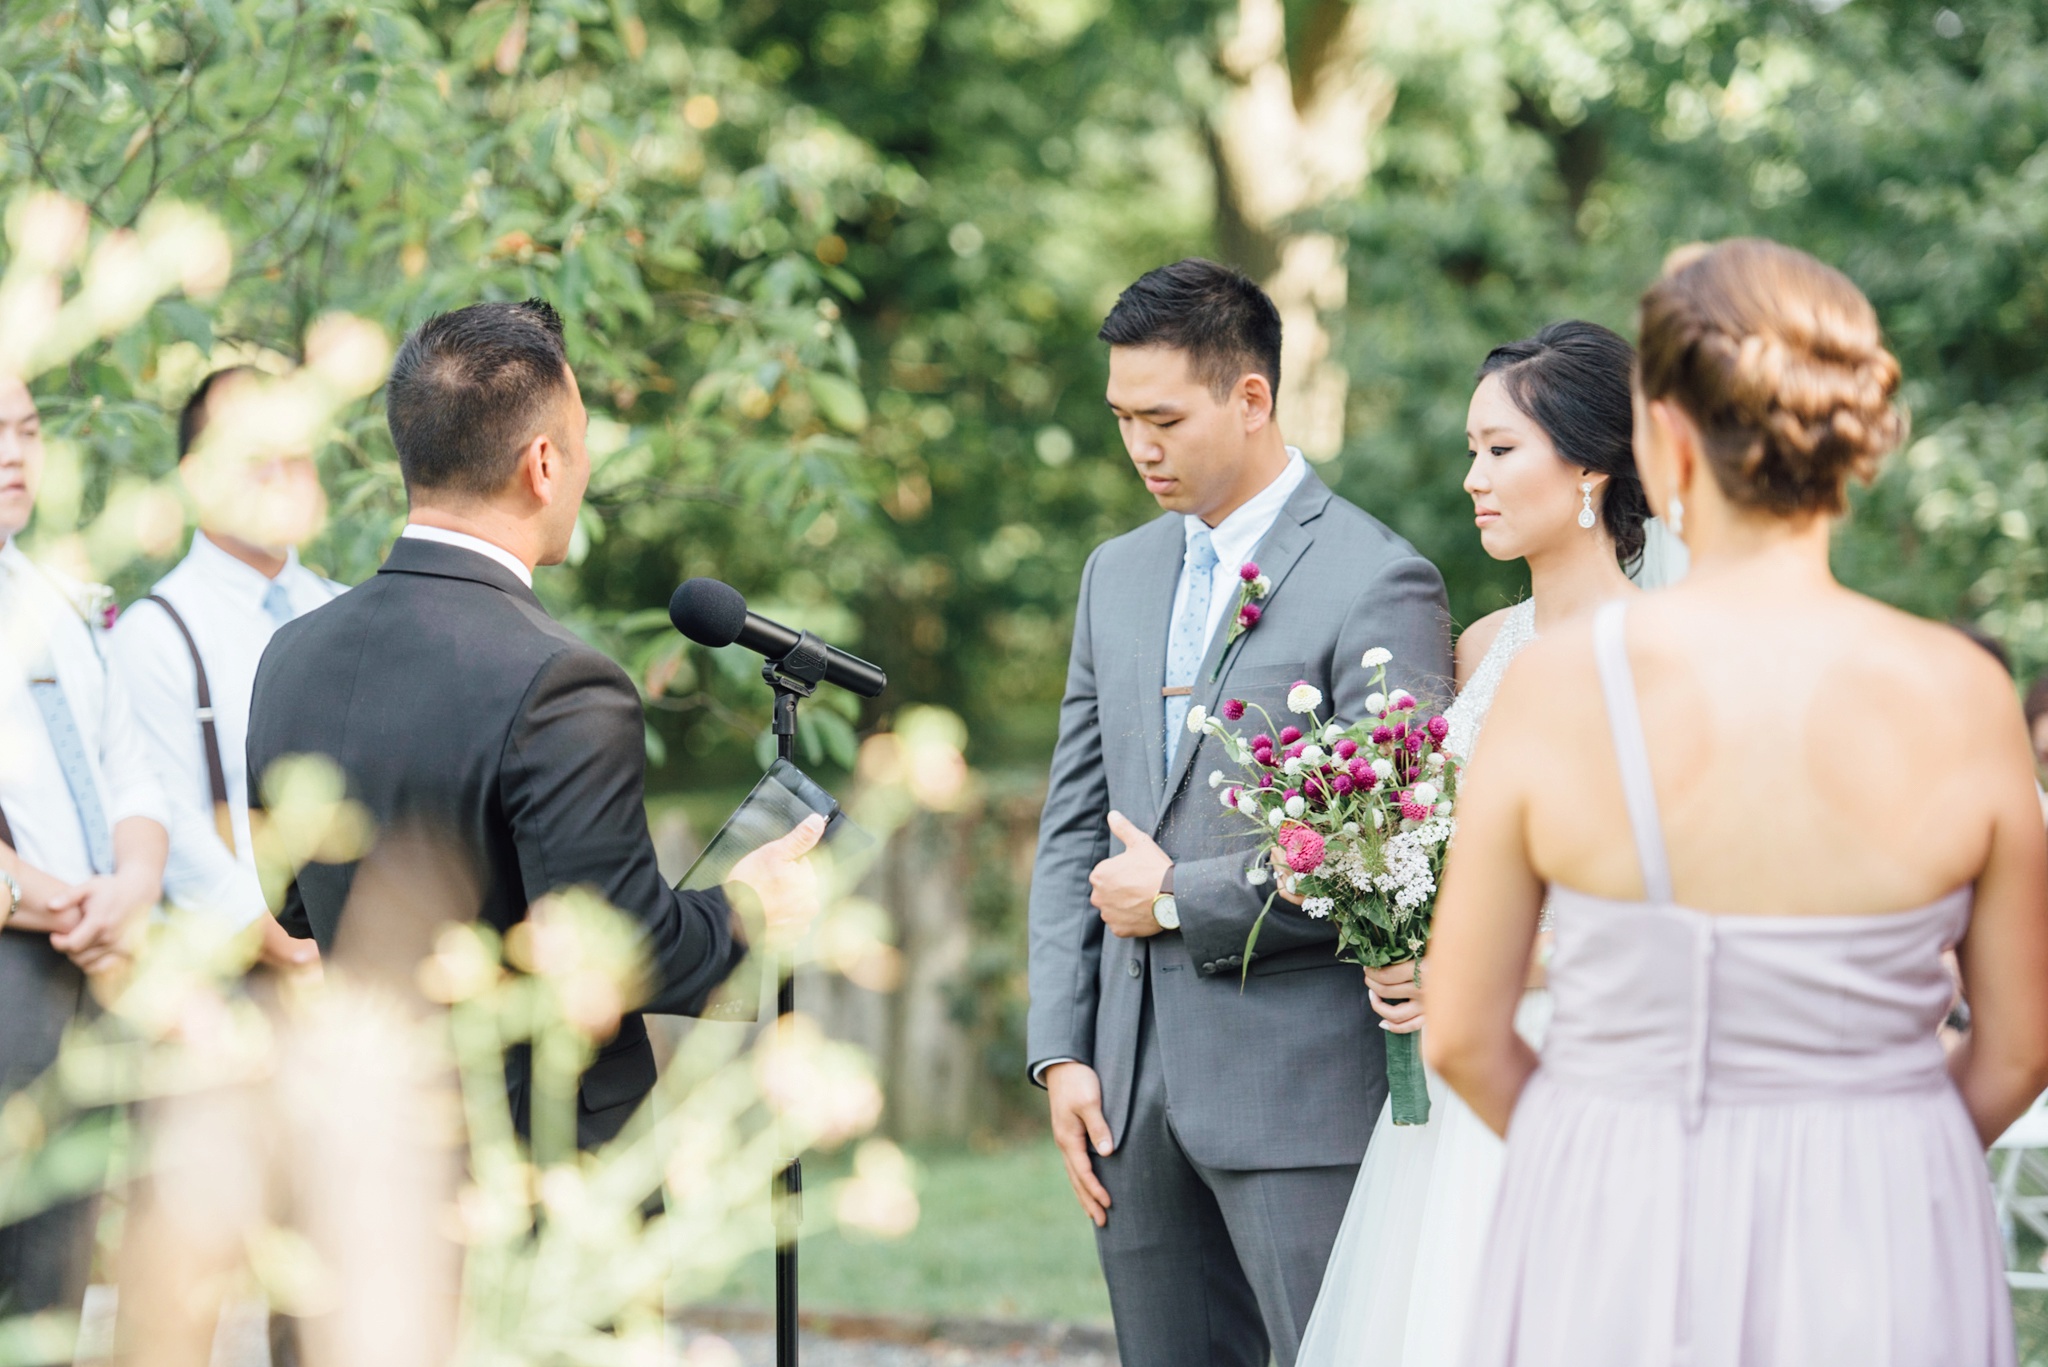 Moon + Nina - Bartram's Garden Wedding - Philadelphia Wedding Photographer - Alison Dunn Photography photo